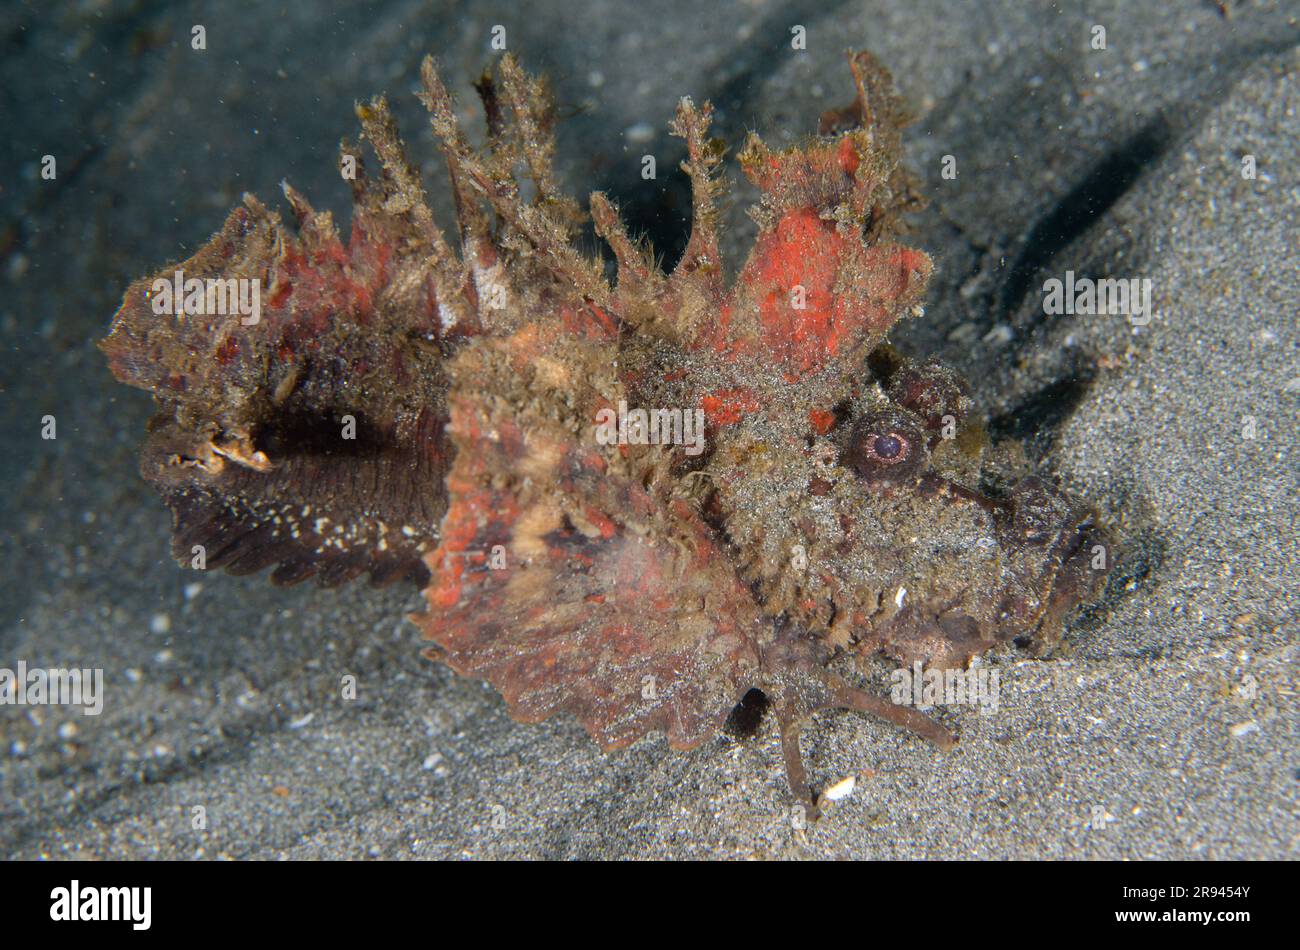 Spiny Devilfish, Inimicus didactylus, montrant des épines venimeuses et des nageoires pectorales utilisées pour marcher sur le sable, site de plongée Jetty, Candidasa, Bali, Indonésie Banque D'Images